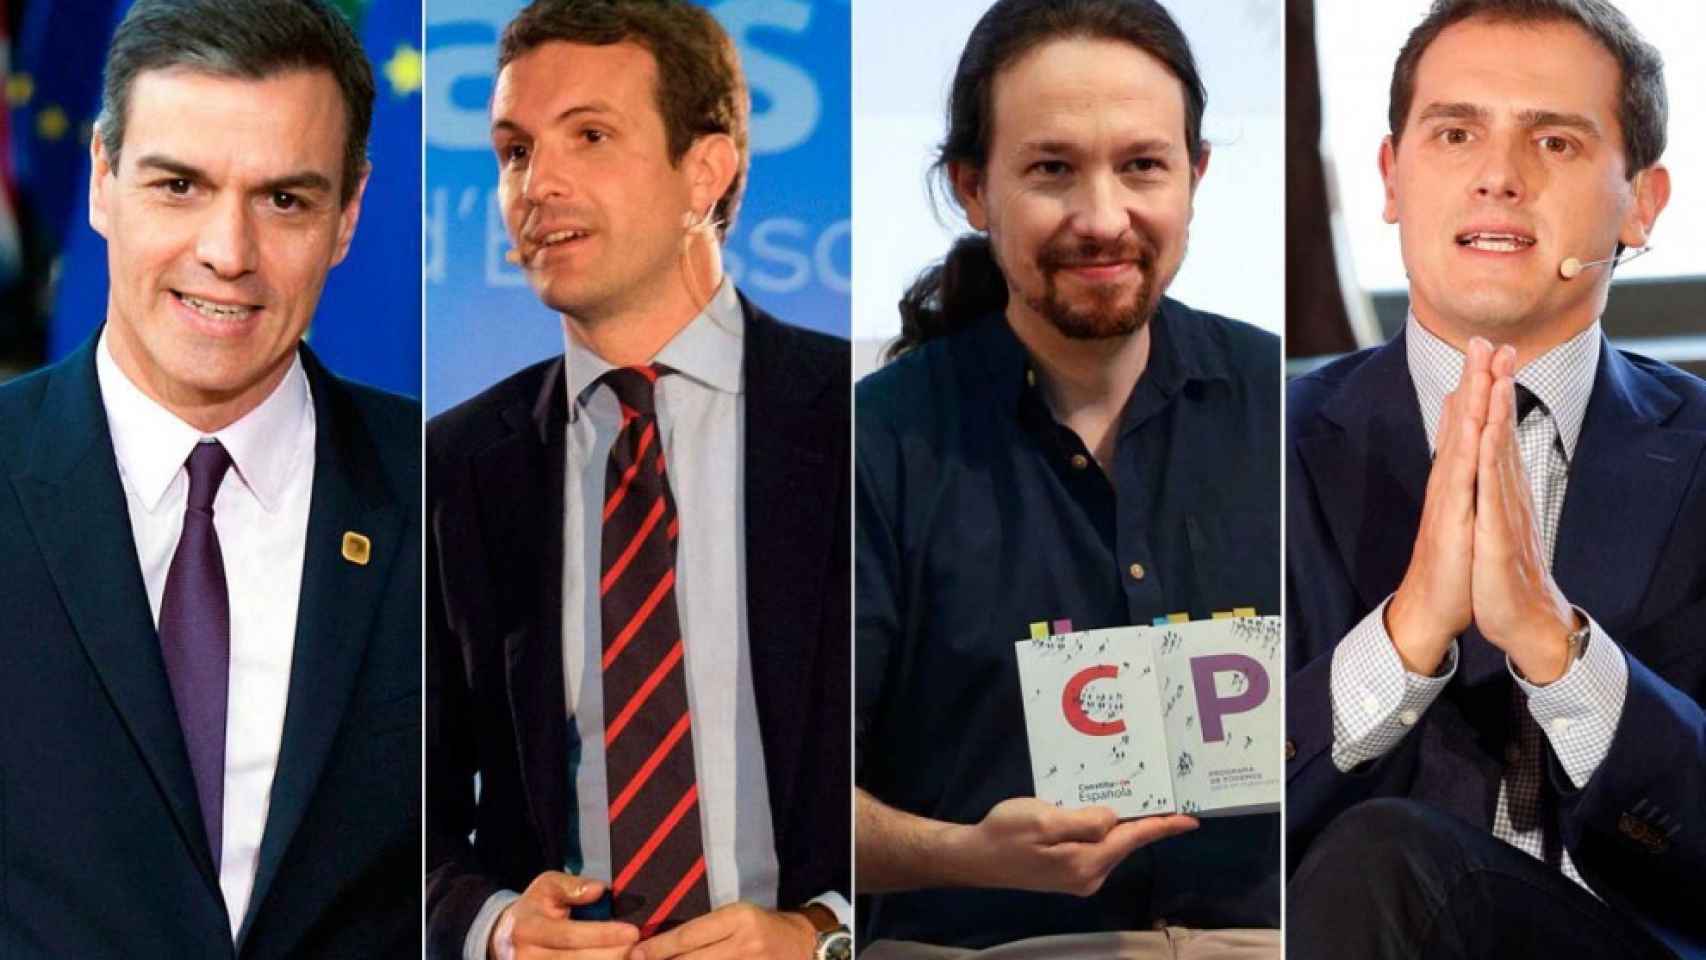 Pedro Sánchez, Pablo Casado, Pablo Iglesias y Albert Rivera.